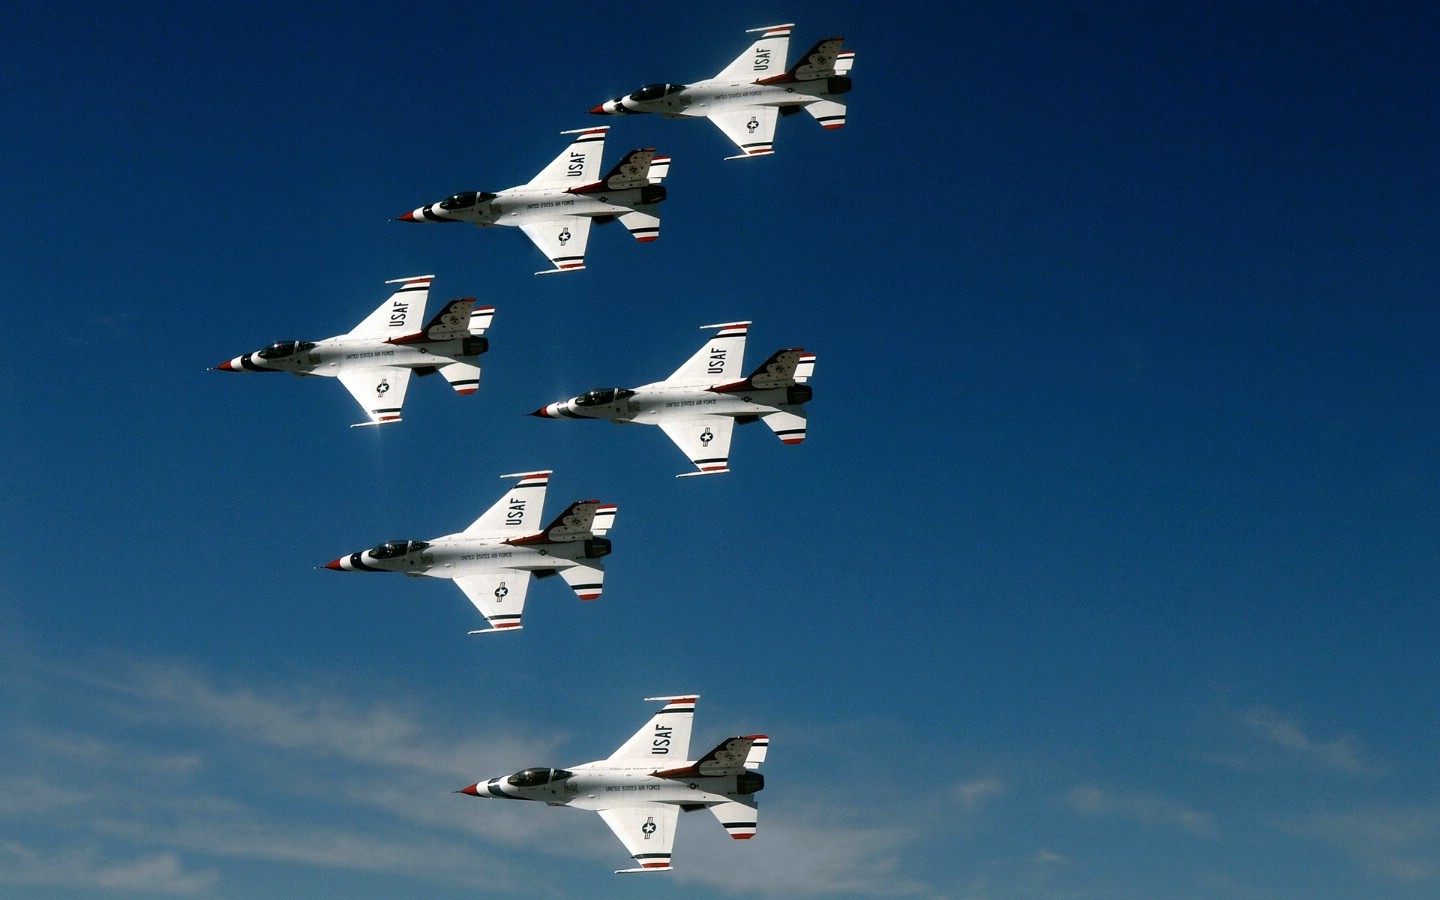 壁纸1440x900美国空军USAF的雷鸟 USAF Thunderbirds 壁纸42壁纸 美国空军USAF的雷壁纸 美国空军USAF的雷图片 美国空军USAF的雷素材 军事壁纸 军事图库 军事图片素材桌面壁纸